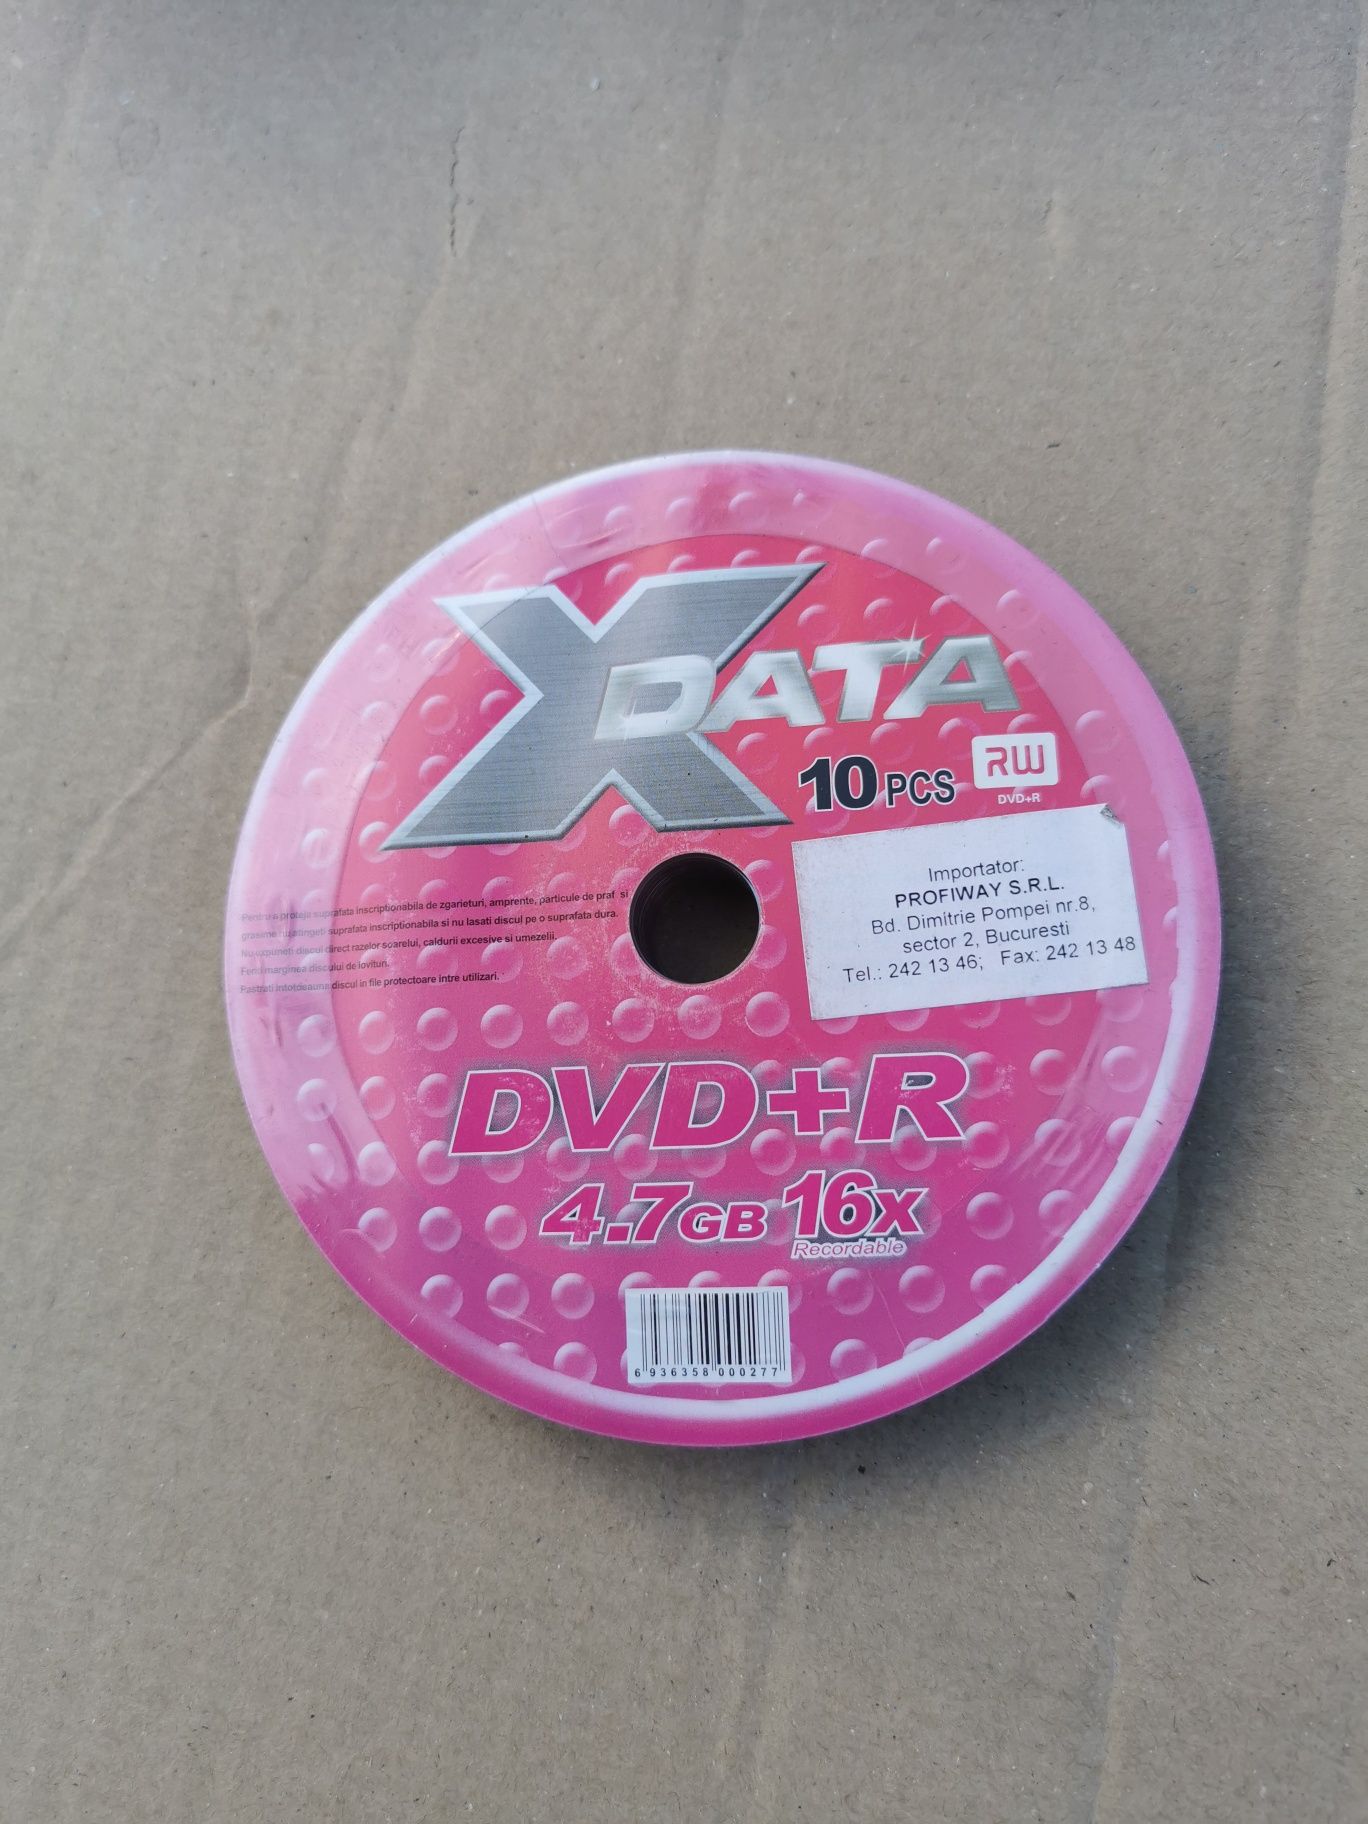 Dvd-R Traxdata 4,7GB 16X Inkjet Printabil 50 buc